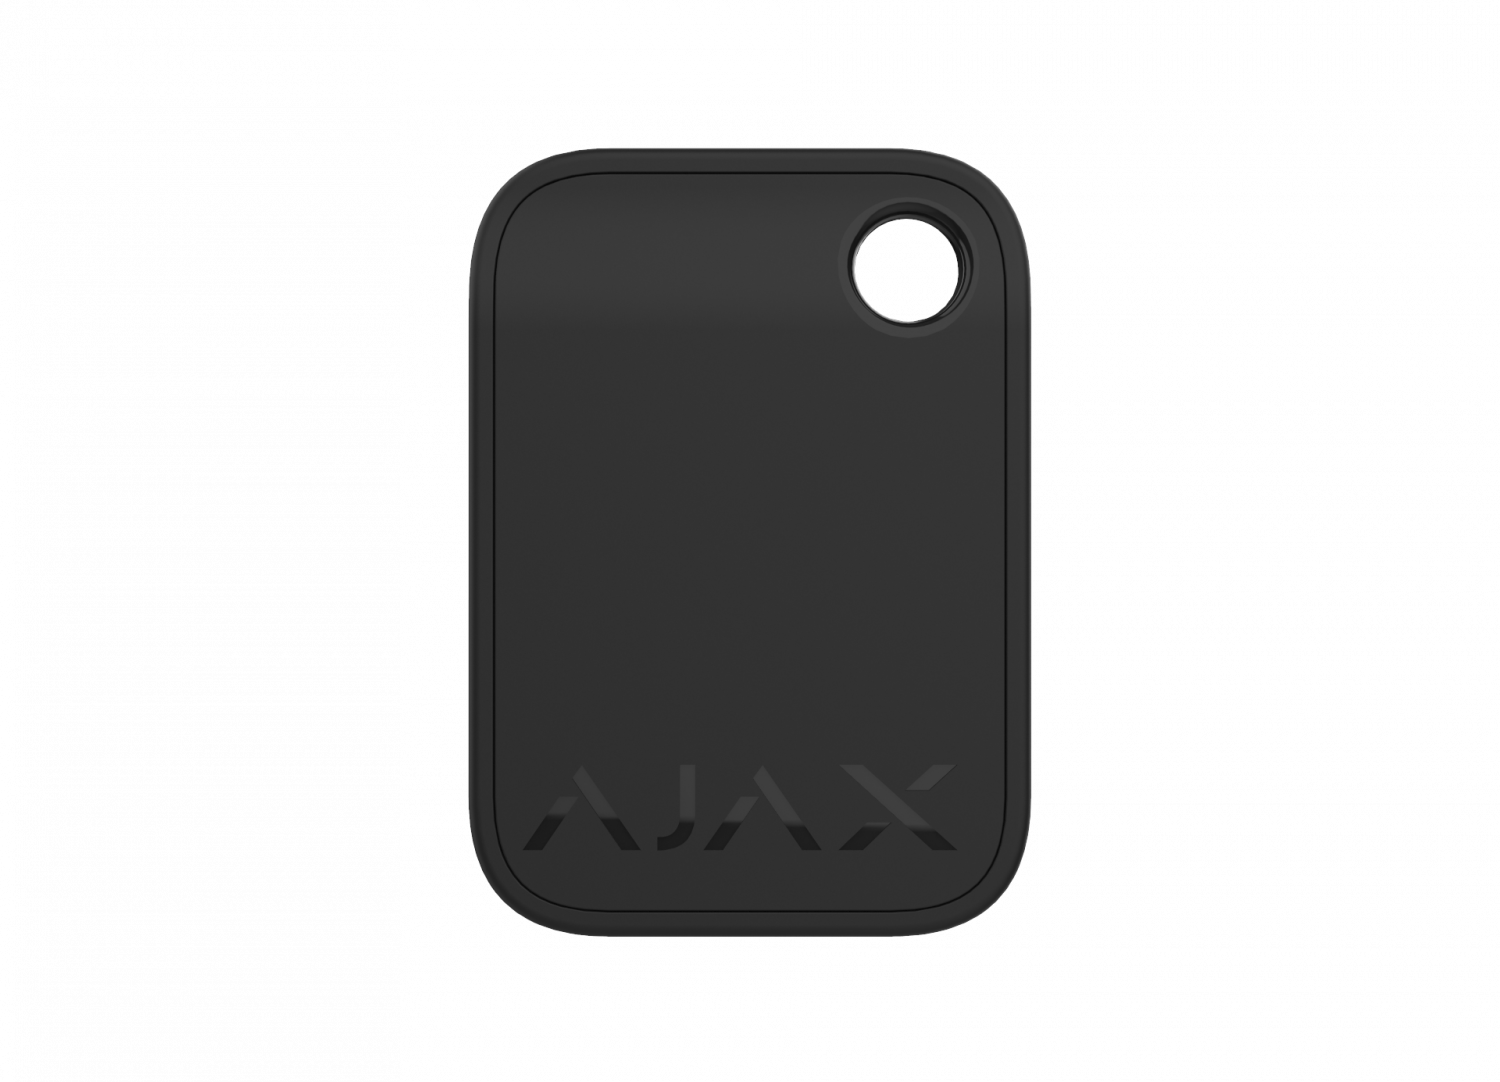 Все Ajax Tag (B) RFID брелок видеонаблюдения в магазине Vidos Group